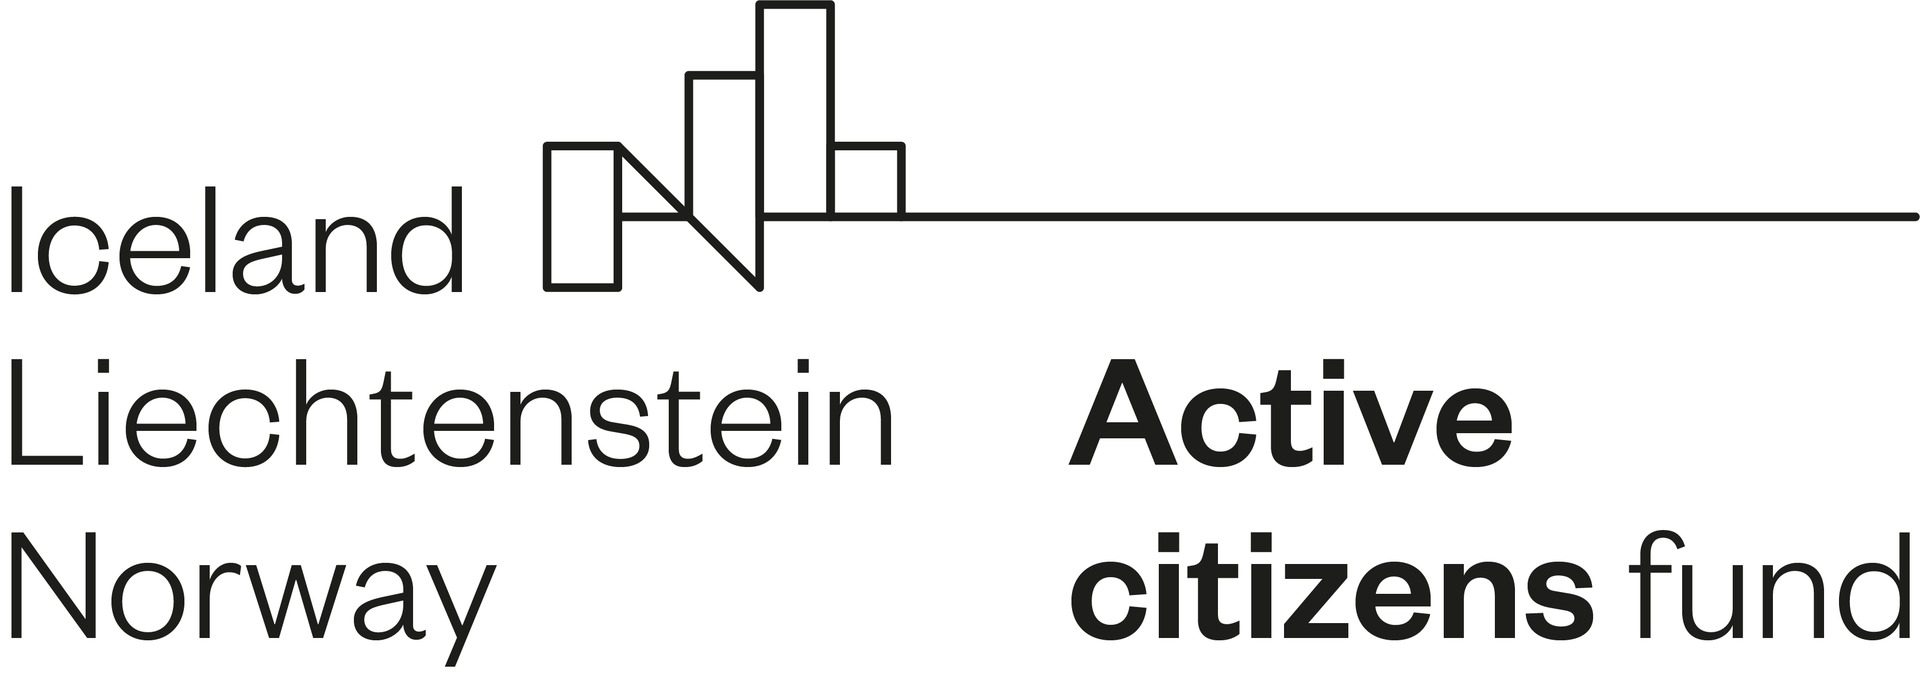 active_citizens_fund_4.jpg